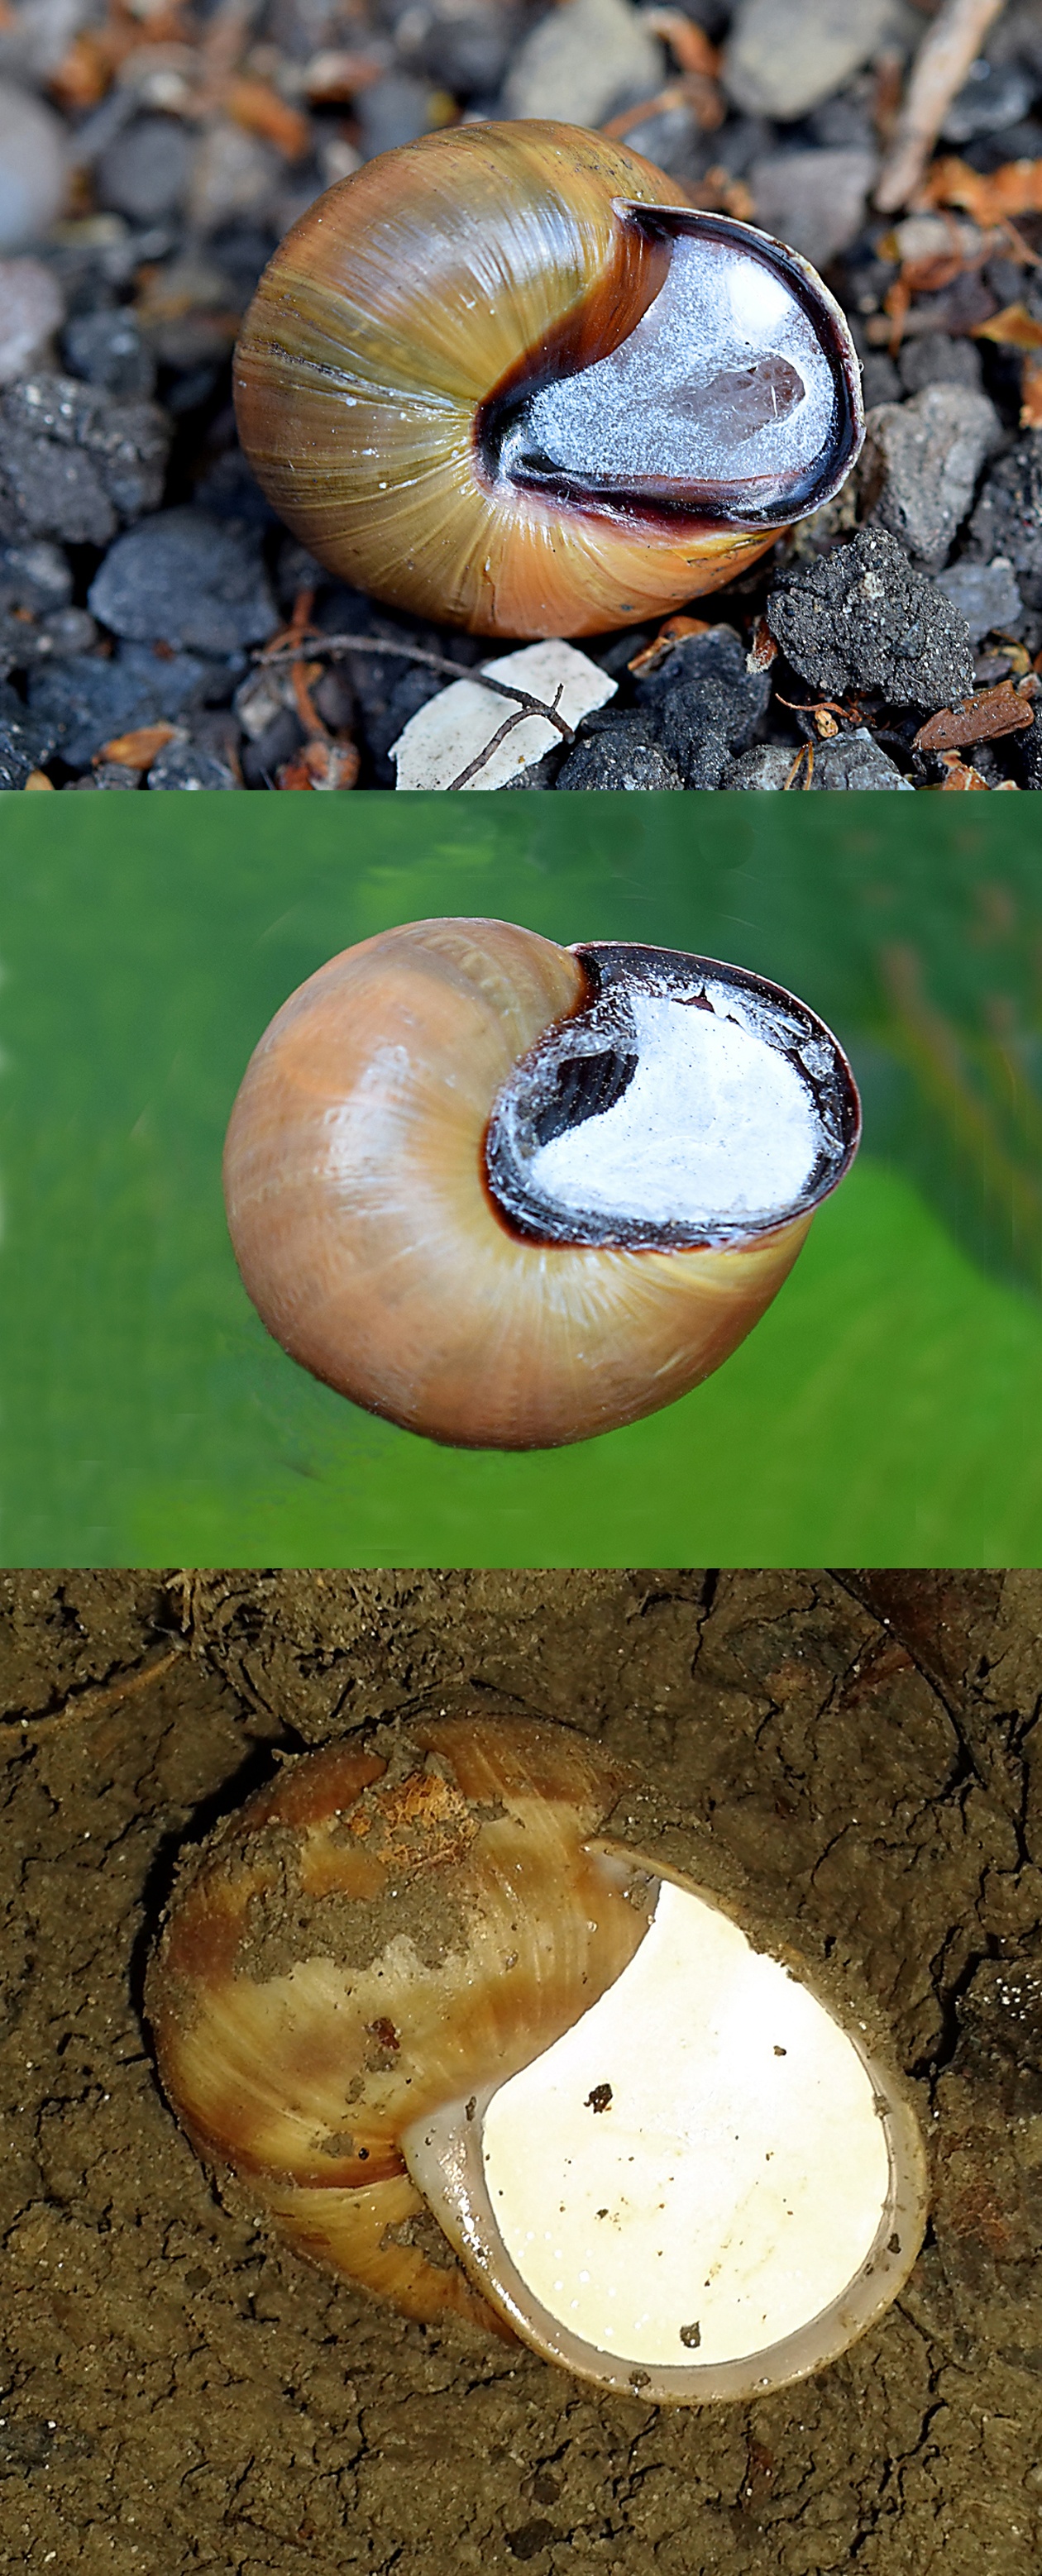 Do snails hibernate in the winter?